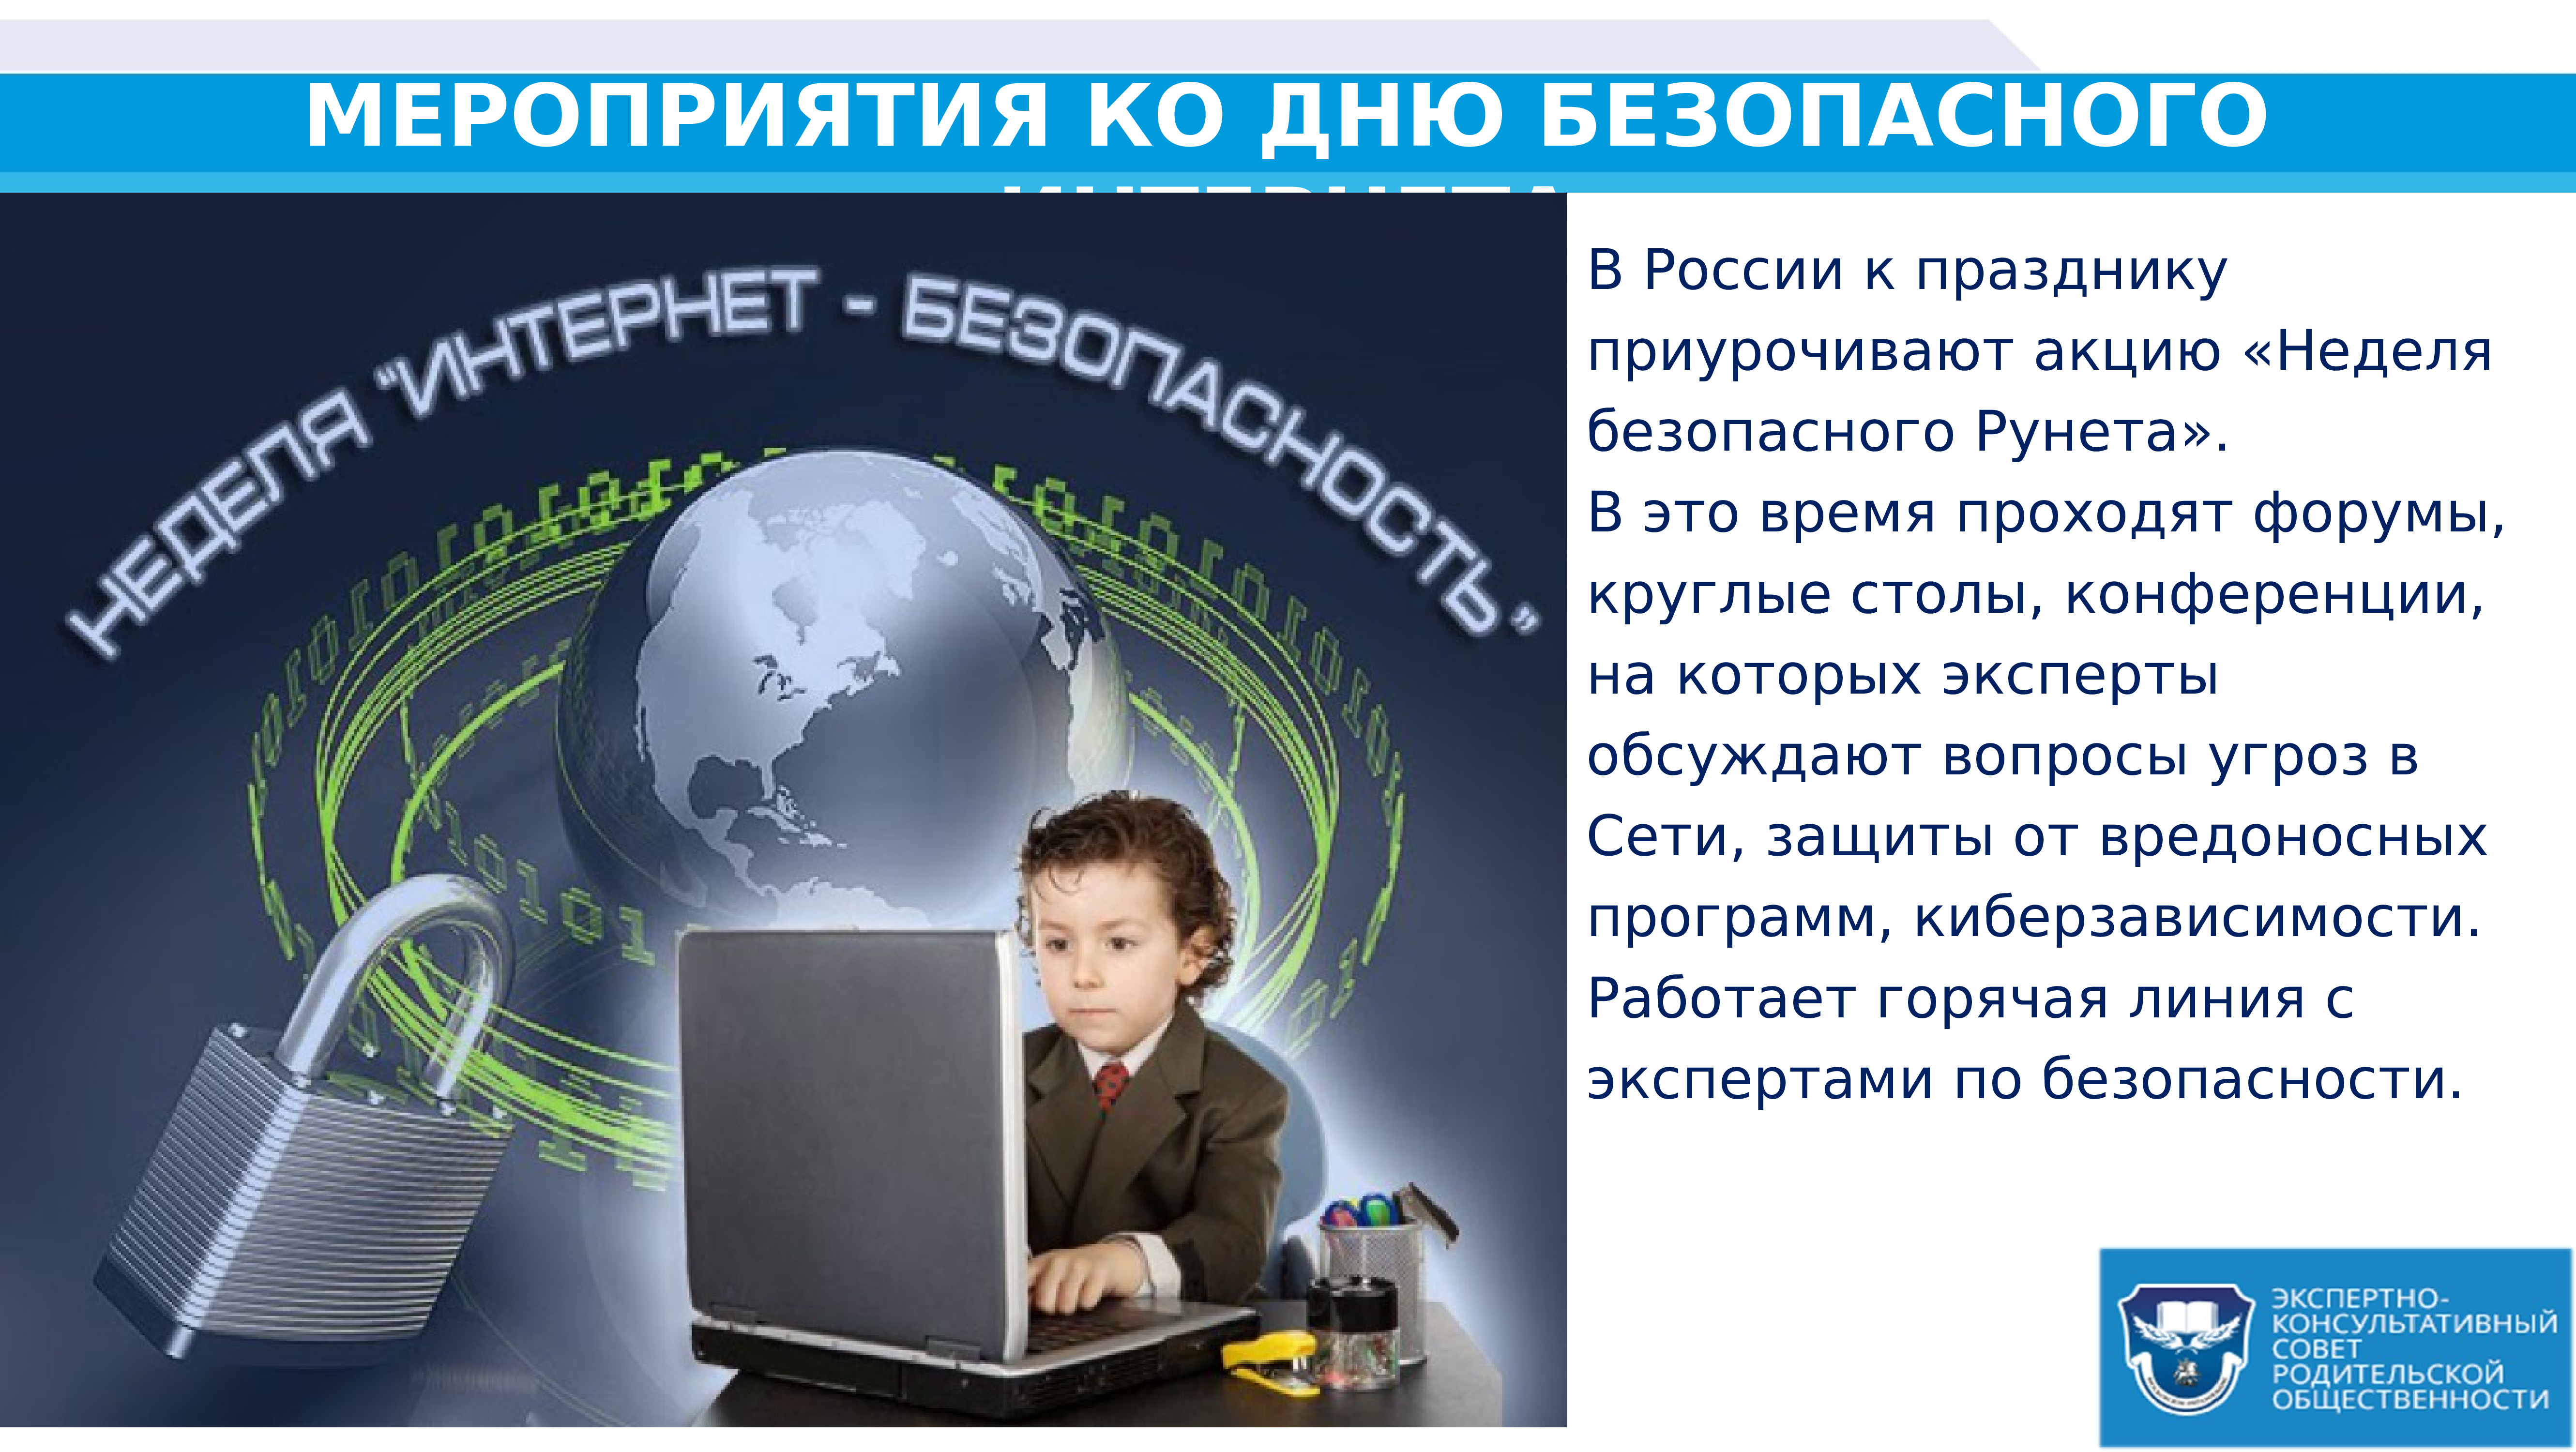 Час информации интернет. День безопасности в интернете. Всемирный день безопасности интернета. Безопасный интернет презентация. День безопасного интернета в России.